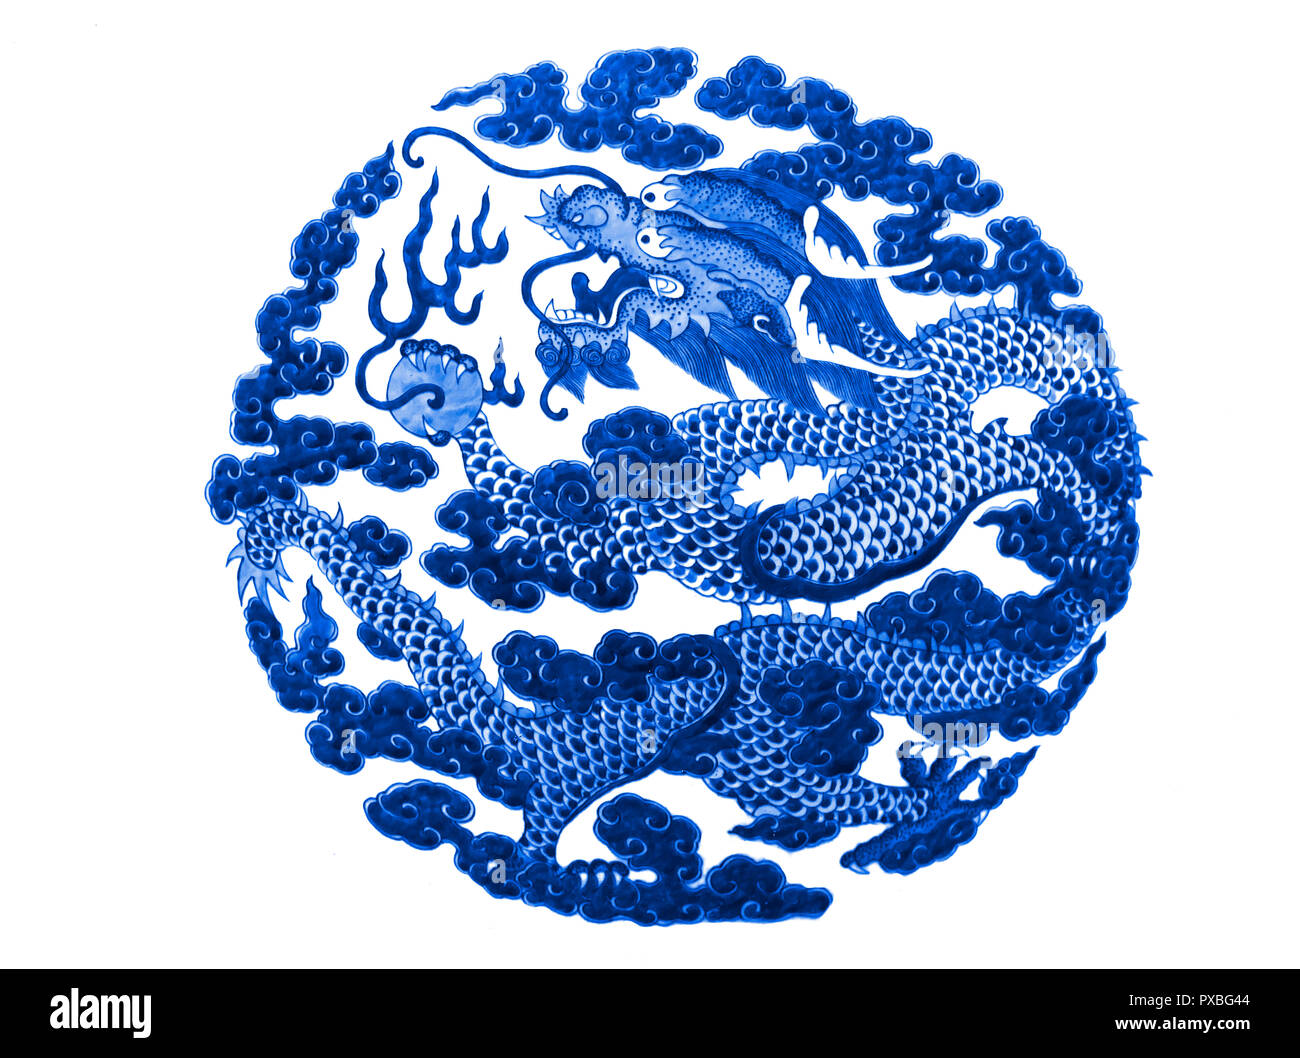 Chinesischer Drache gemalt auf einem keramischen Vase mit kobalt blau glasiert Stockfoto